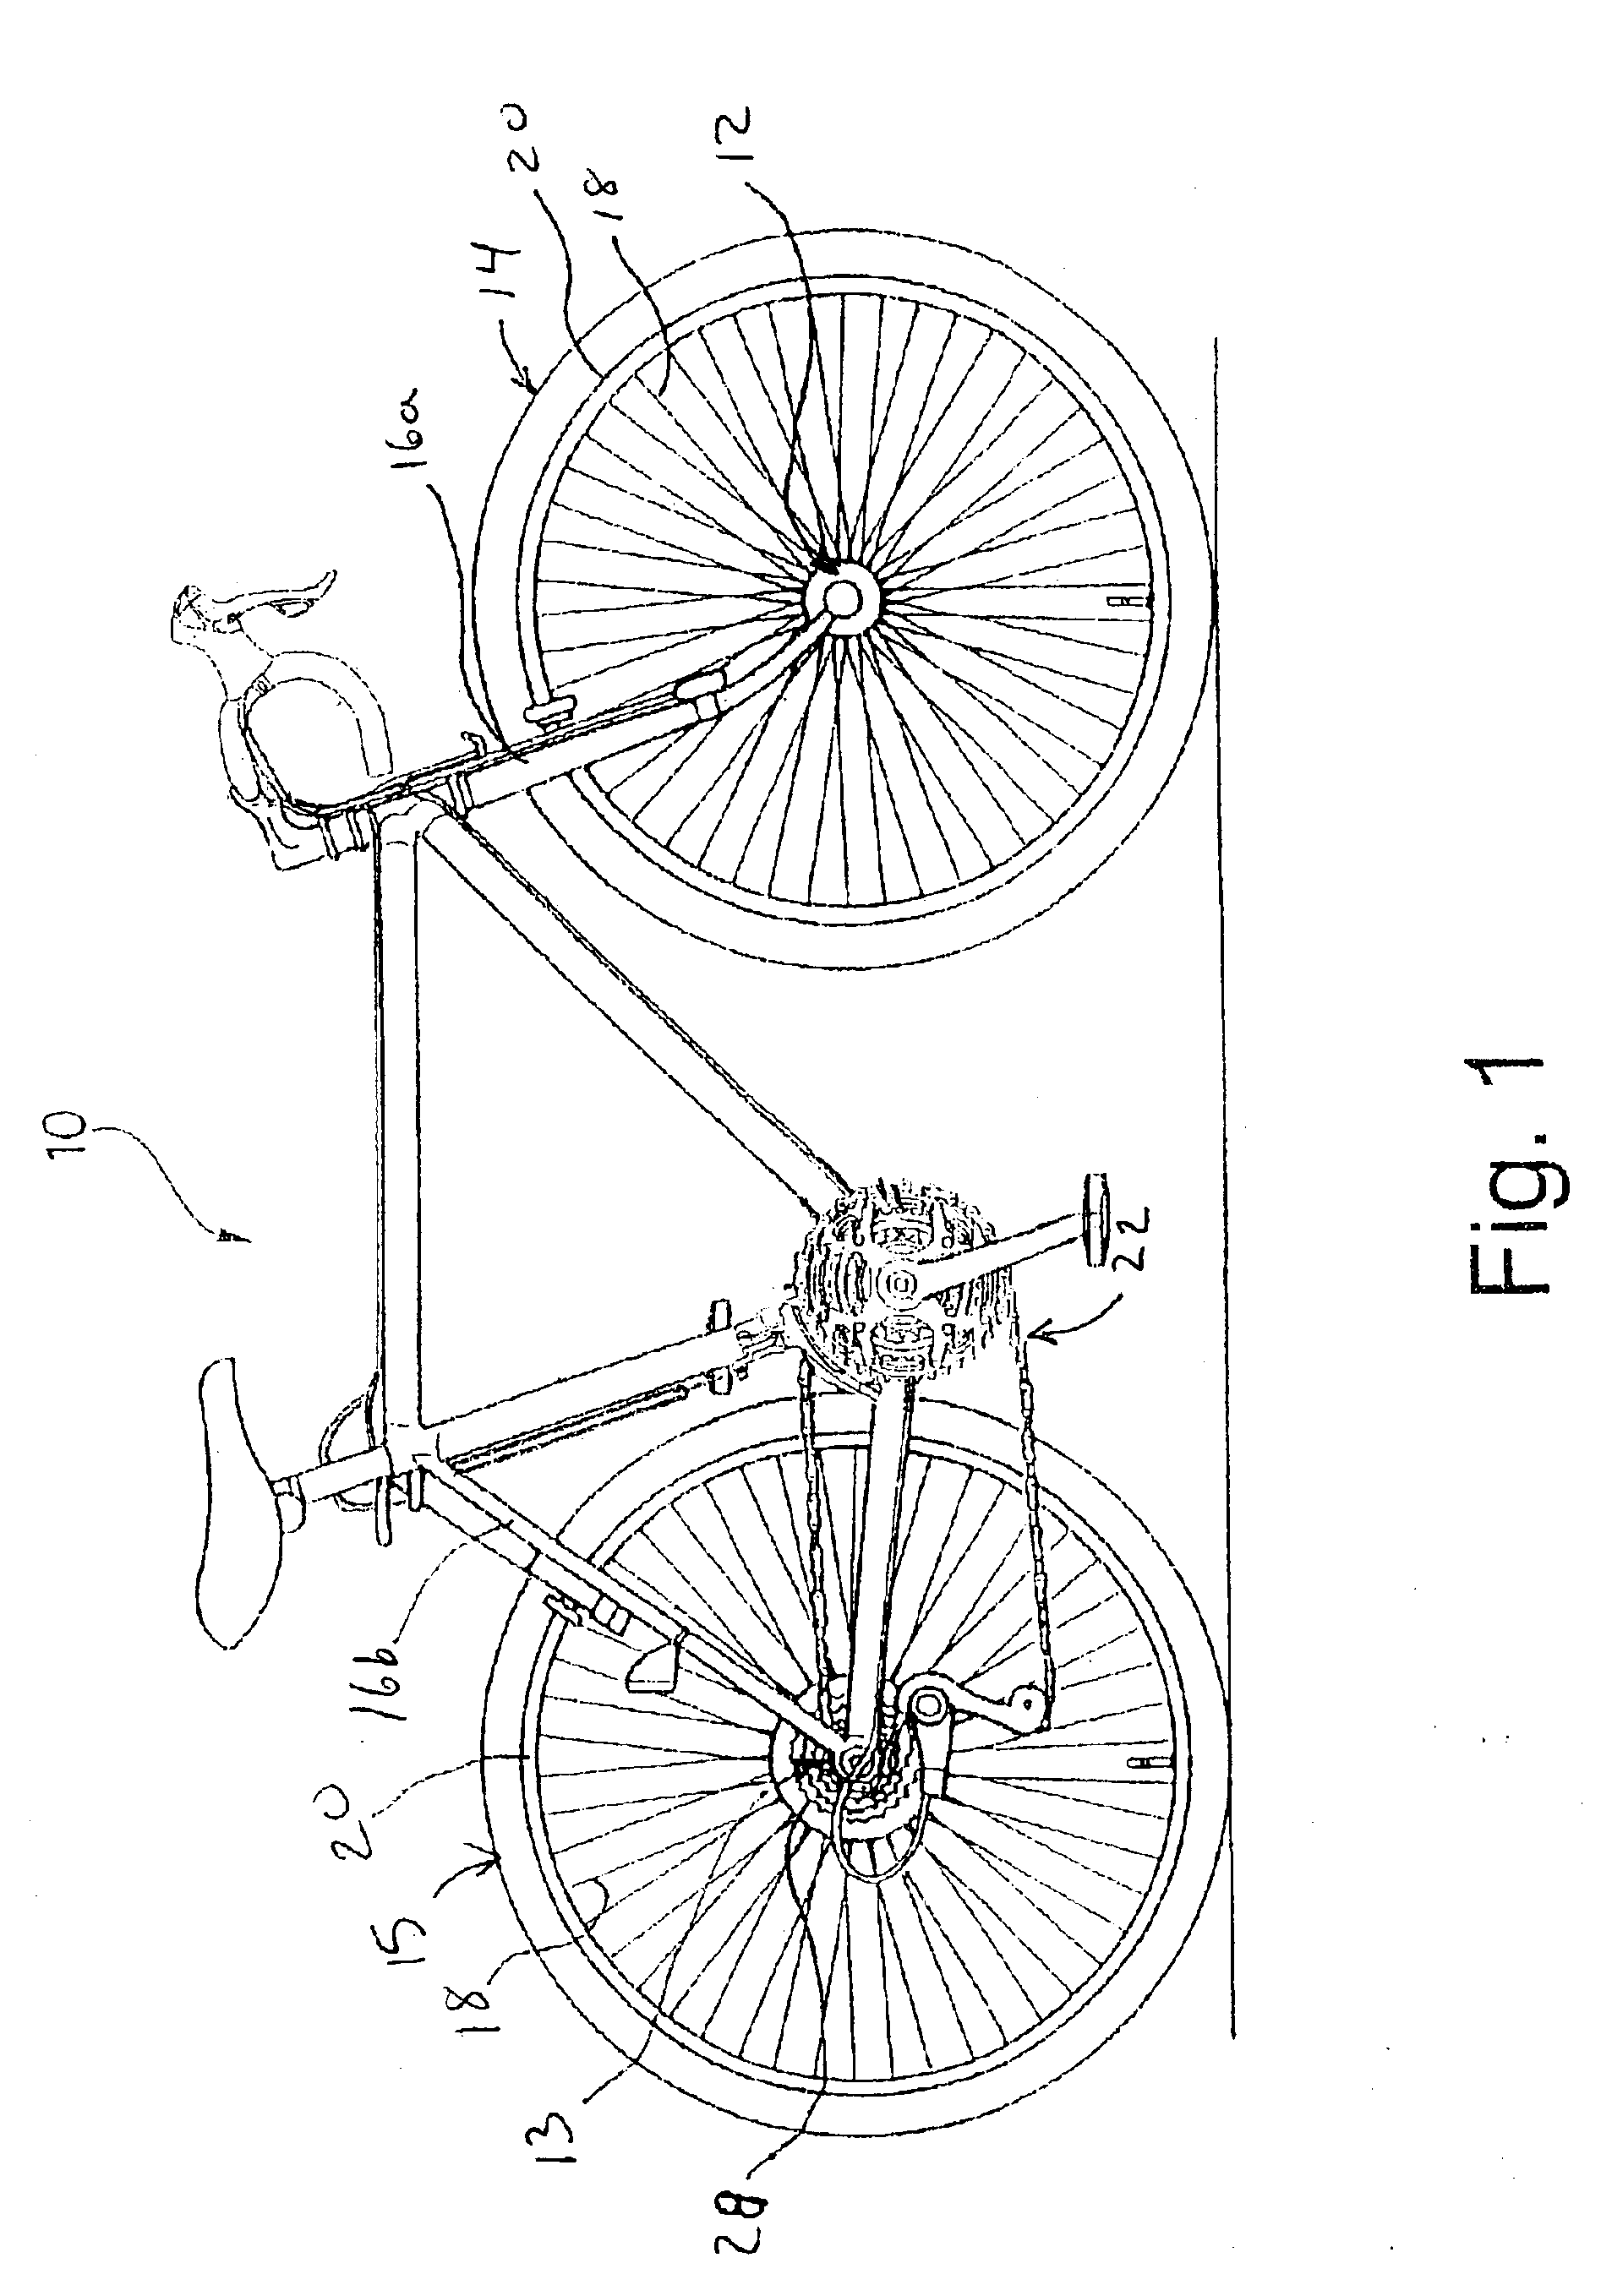 Bicycle hub axle